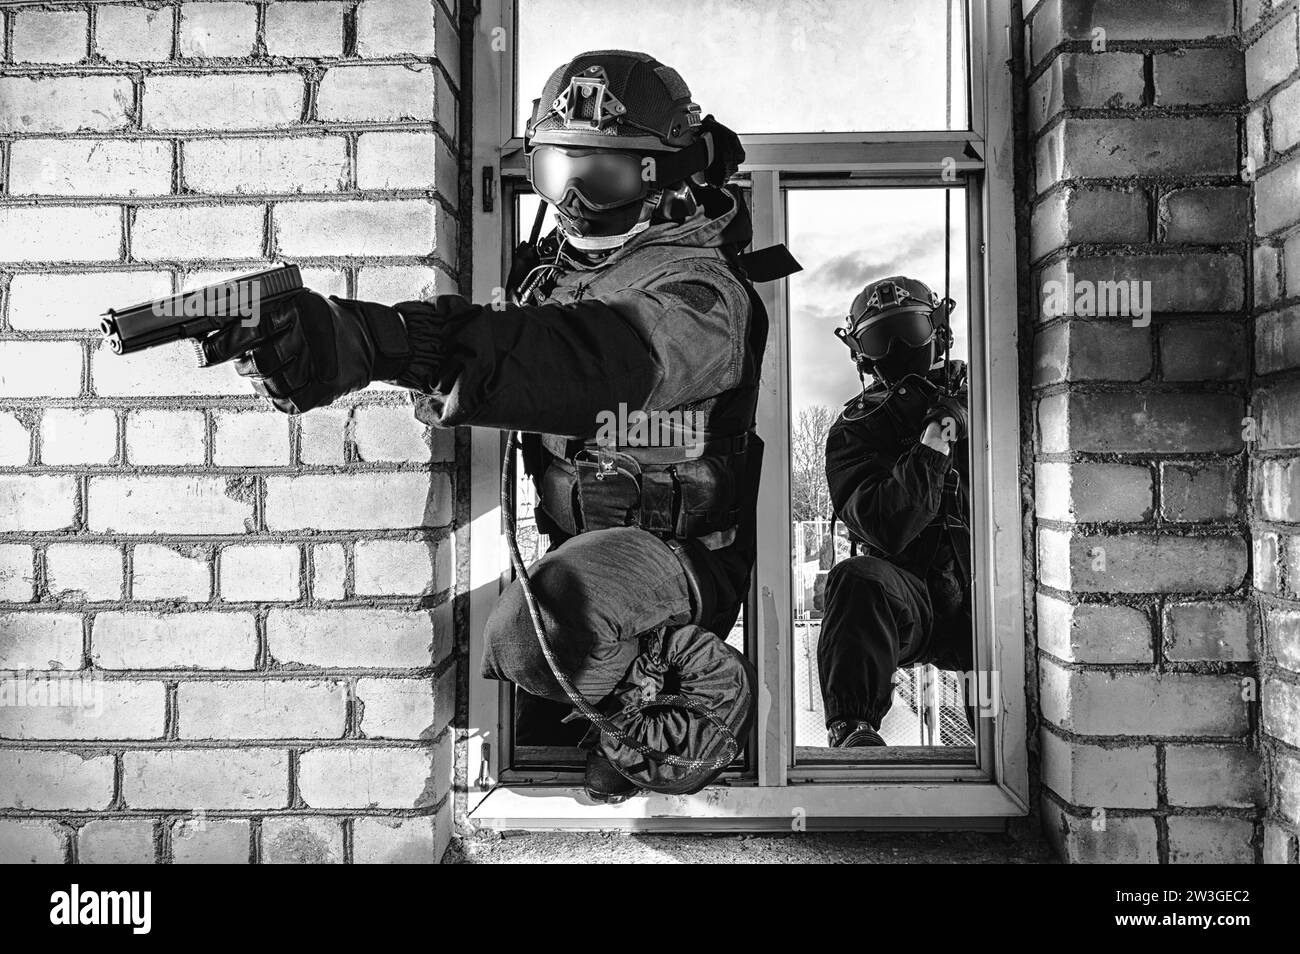 Grupo de combatientes de fuerzas especiales asaltan el edificio a través de la ventana. Sesiones de formación del equipo SWAT. Concepto antiterrorista. Escaladores. Medios mixtos Foto de stock